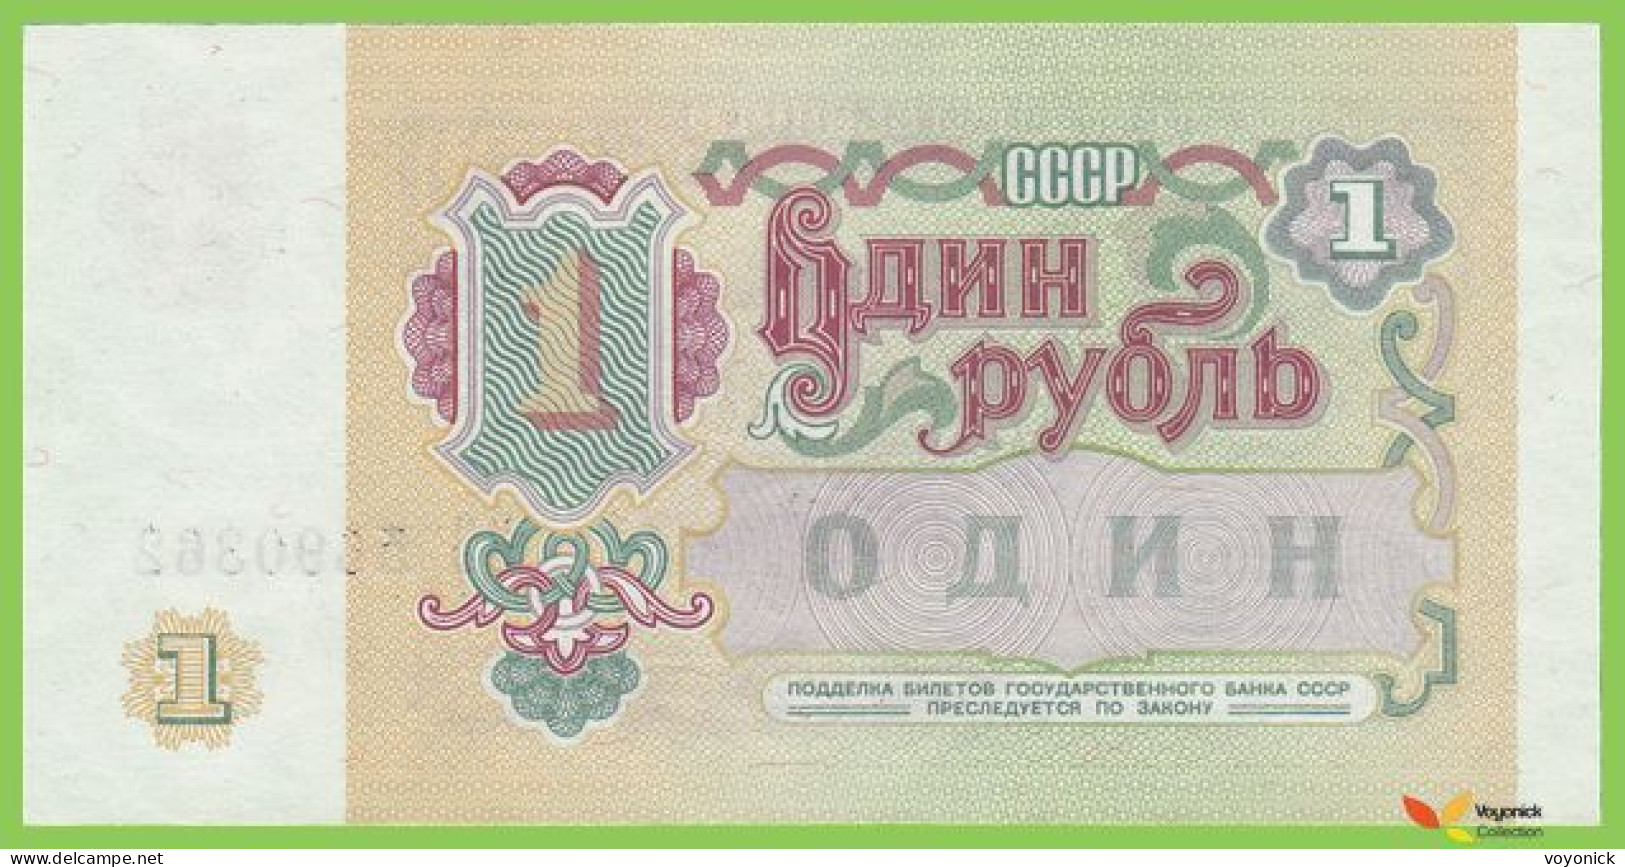 Voyo RUSSIA (SOVIET UNION) 1 Rubl 1991 P237a B222a BO UNC - Russia